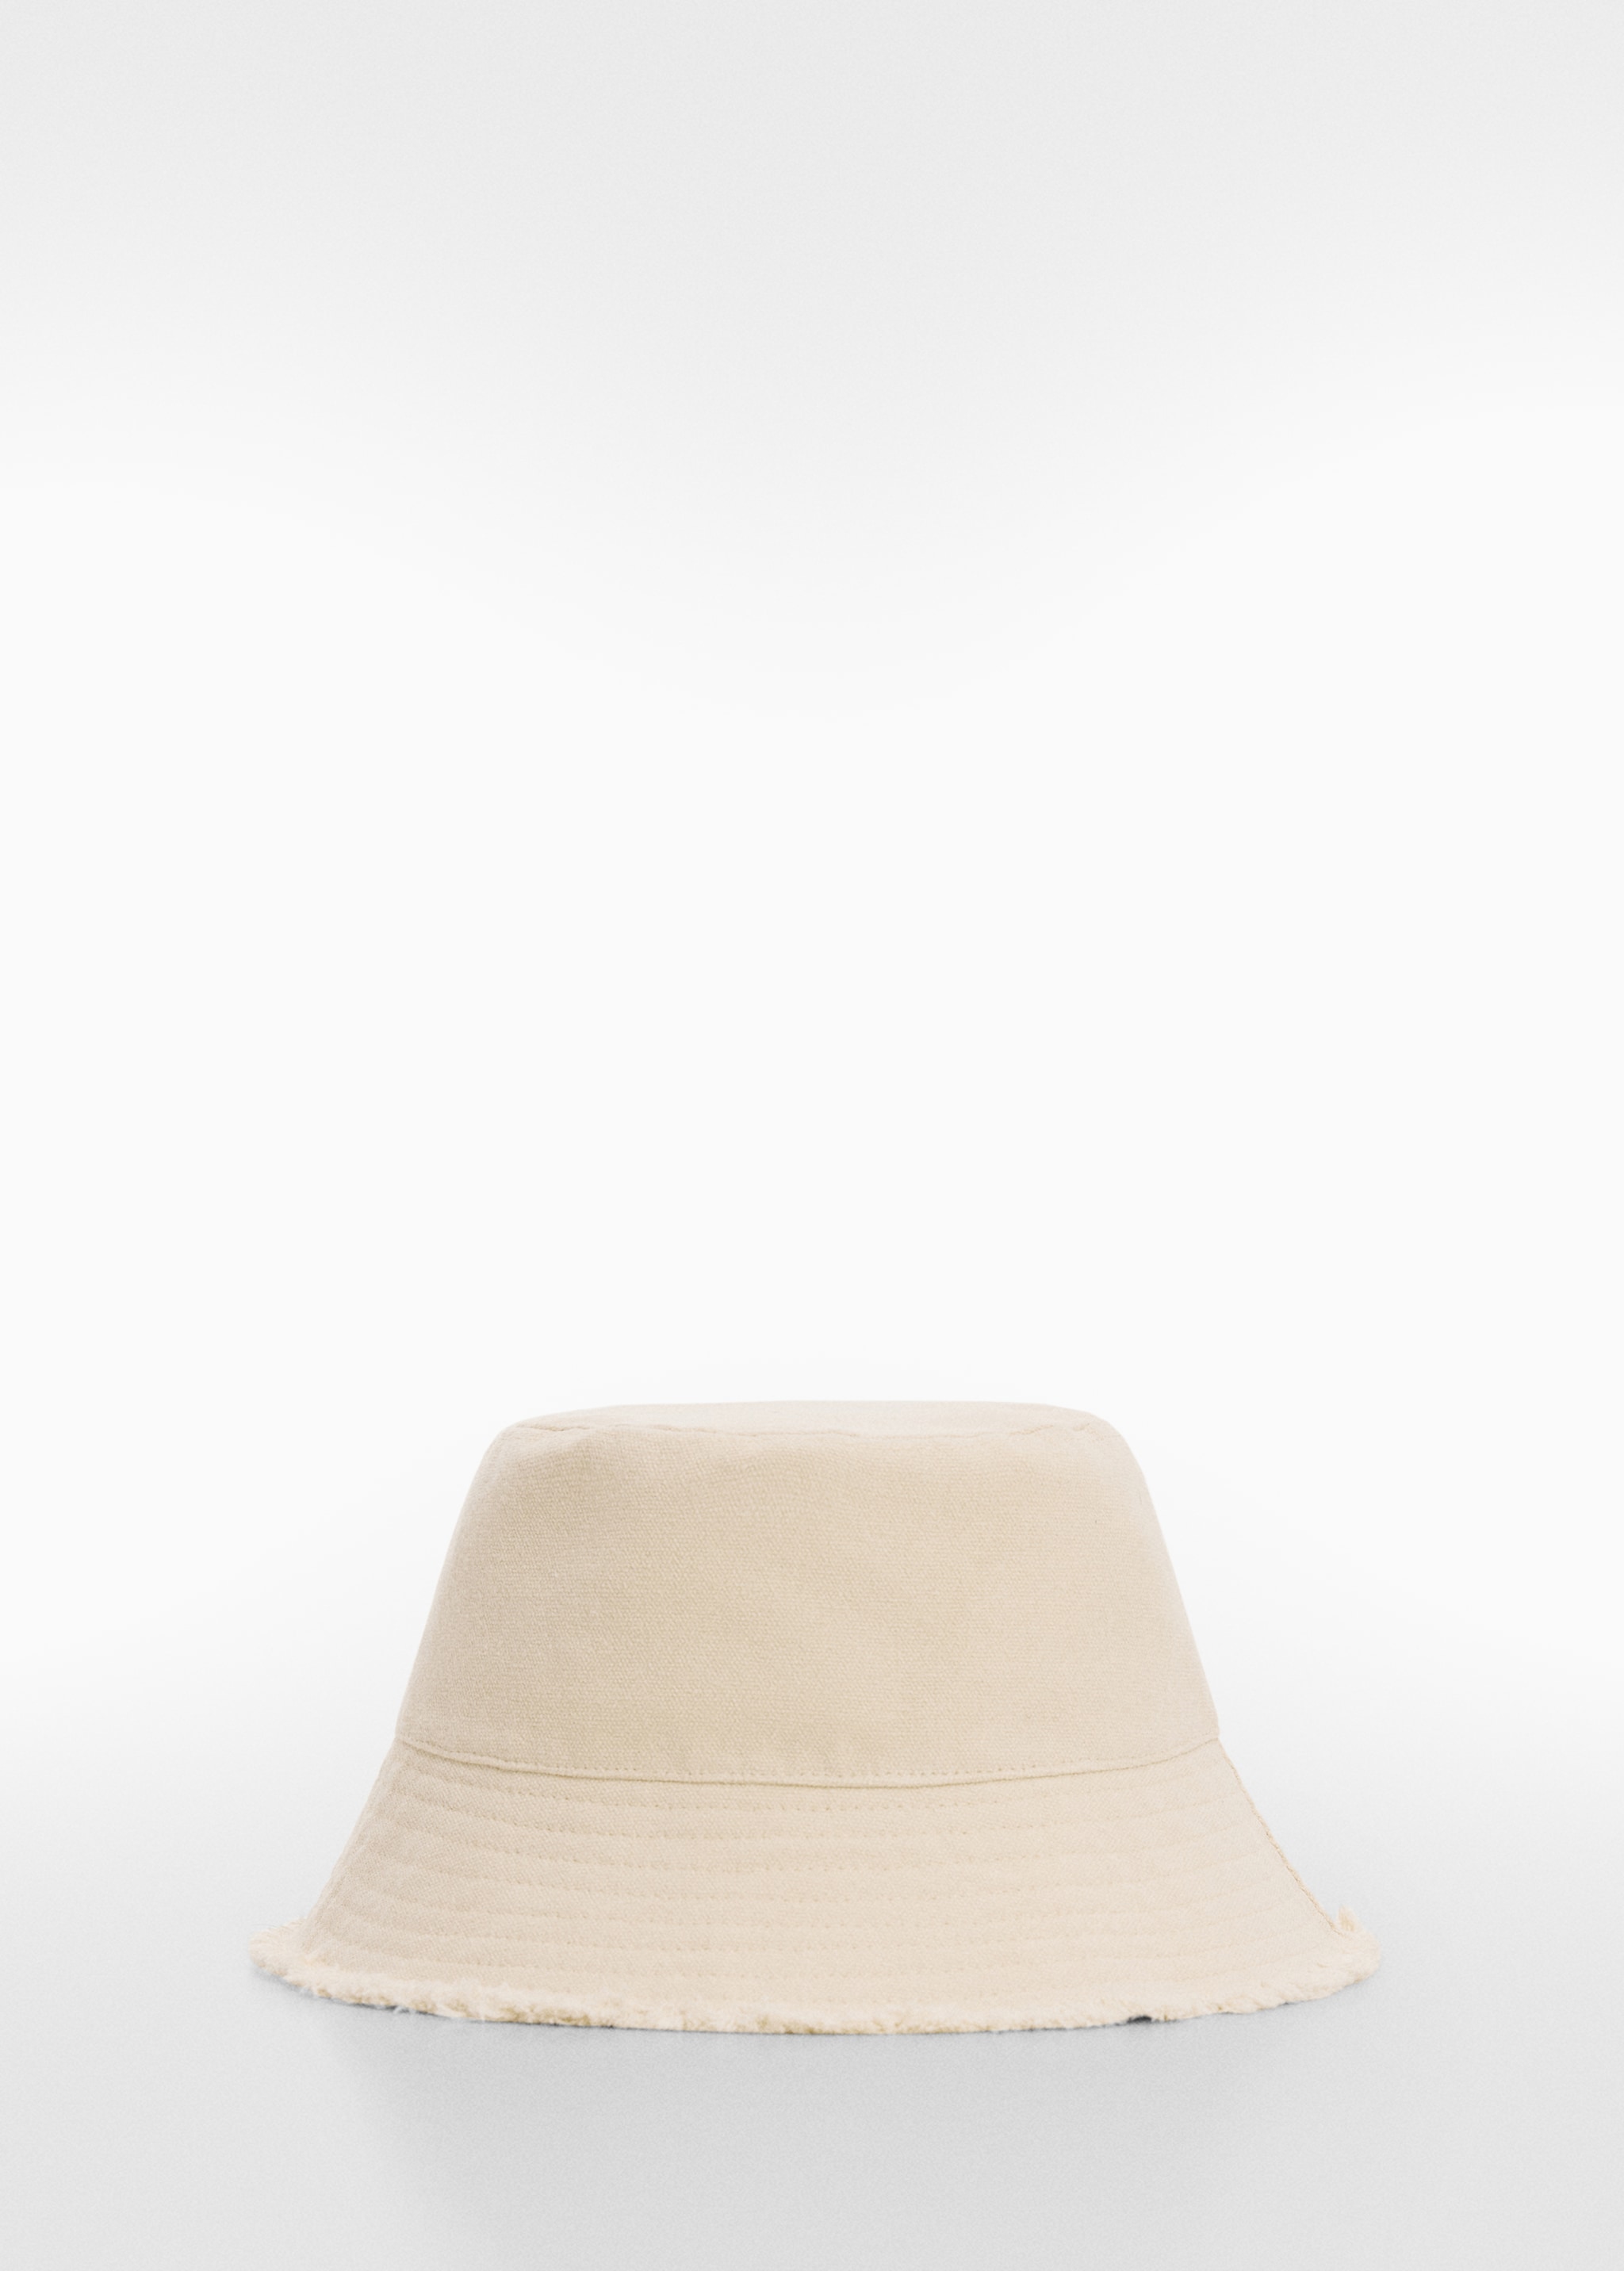 قبعة دلو - منتج دون نموذج